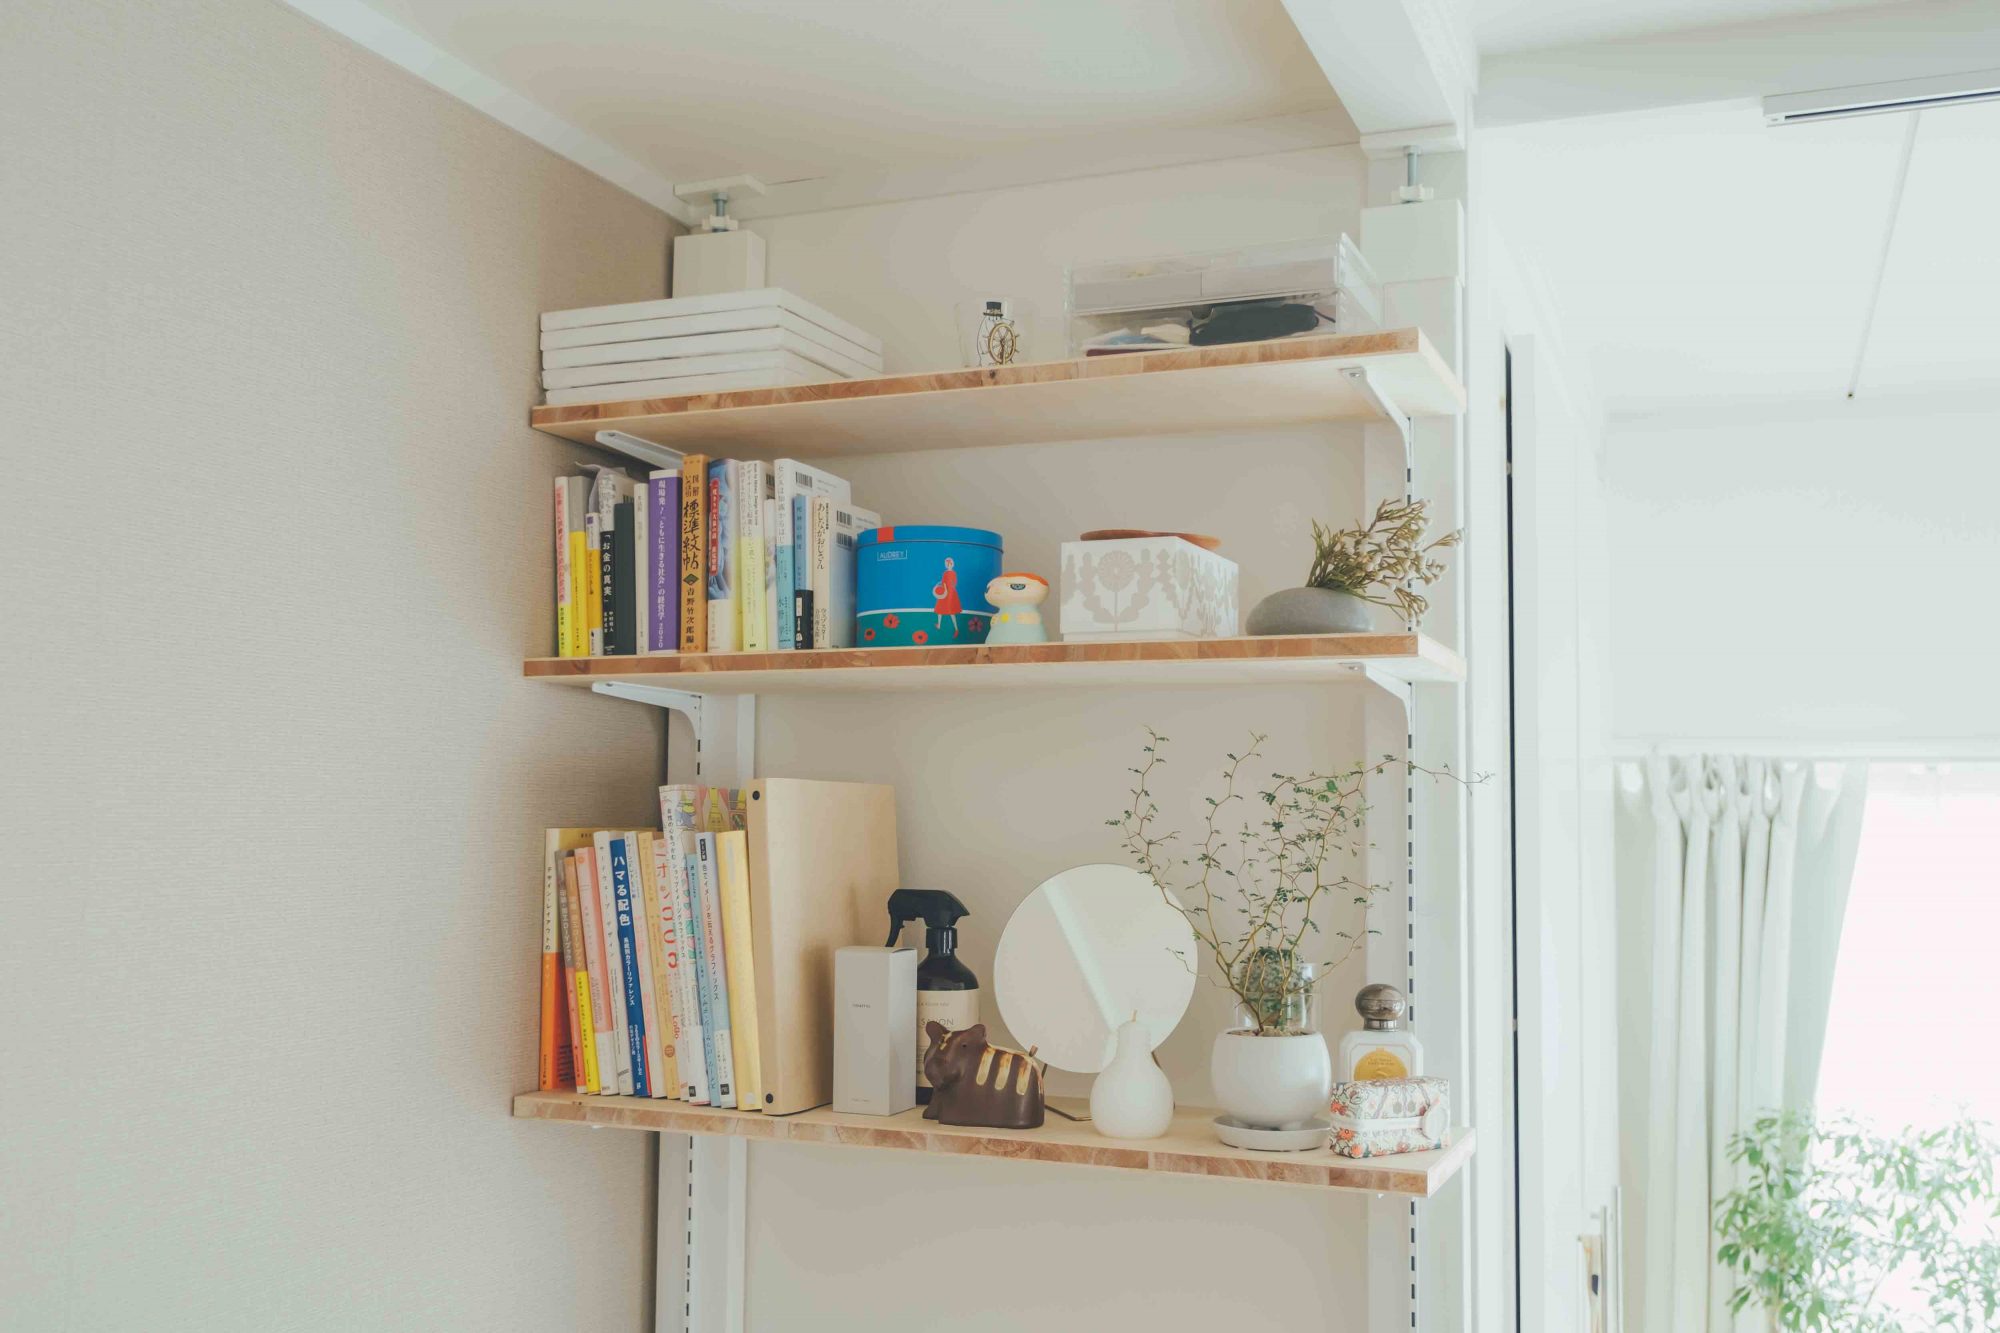 ラブリコを利用して、本や雑貨などを置くスペースを作成したお部屋。棚の高さを好きな位置に調節できるのが便利です。 